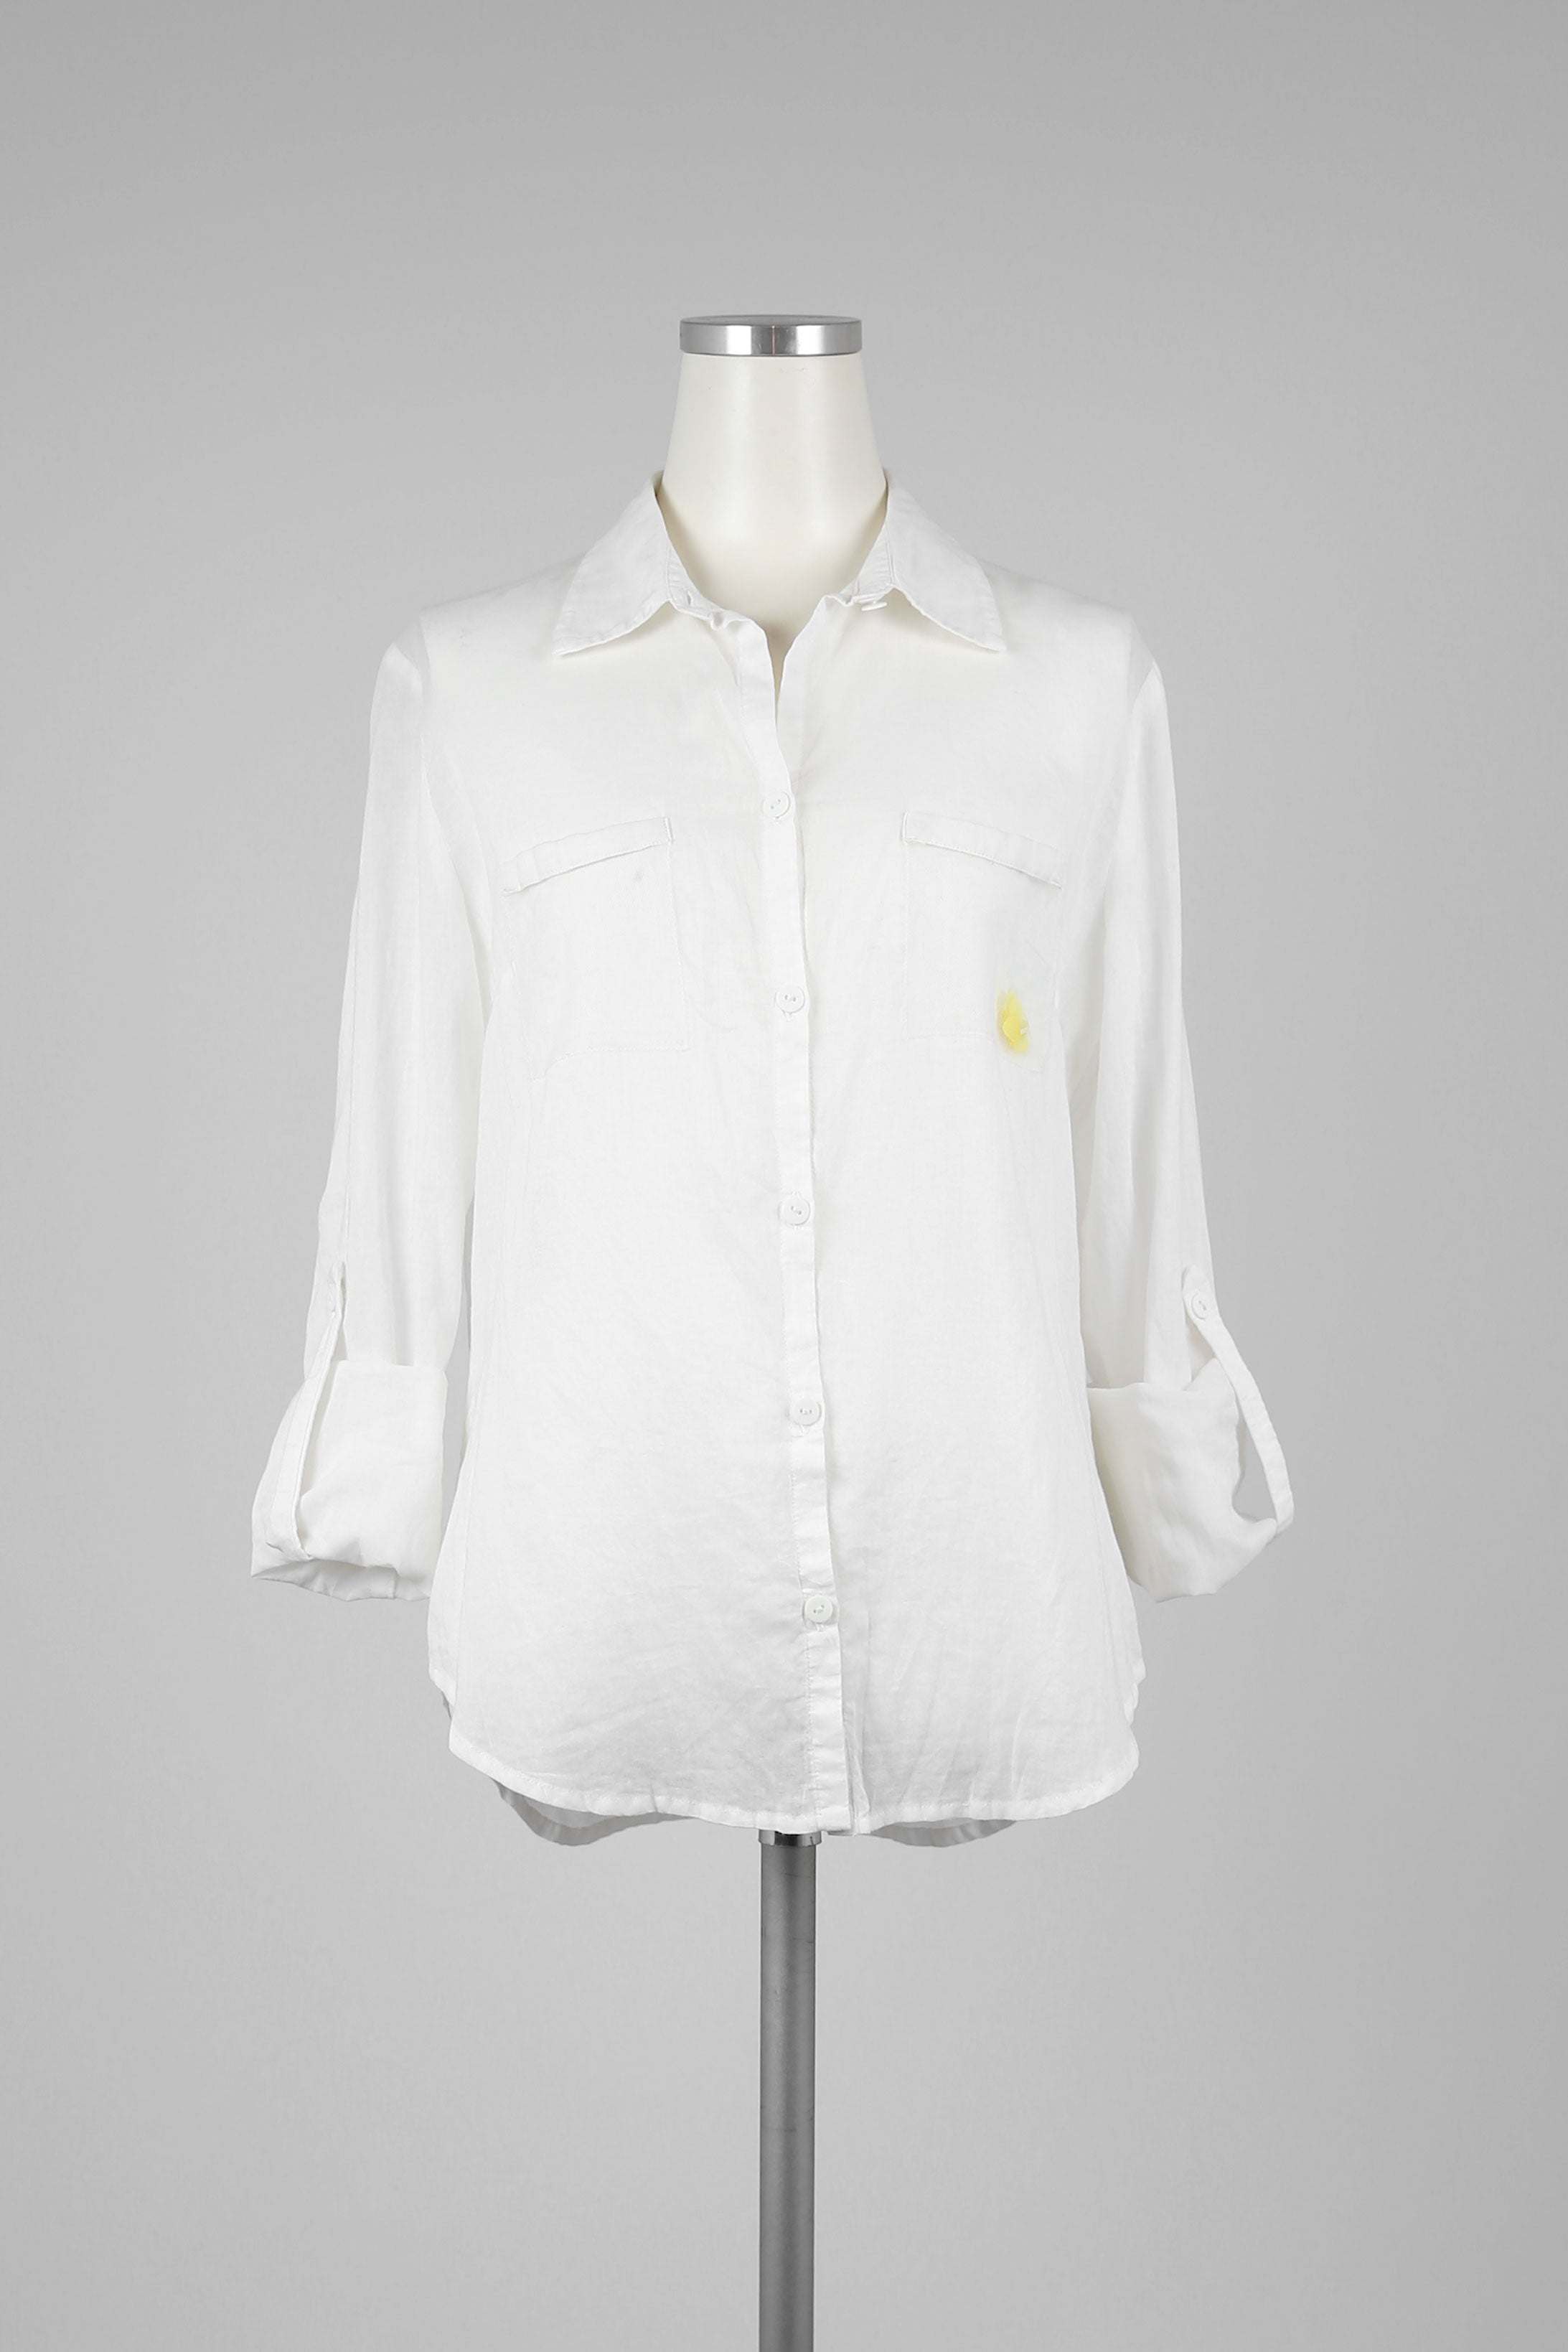 White Light Weight Pocket Shirt - Tae With Jane NY